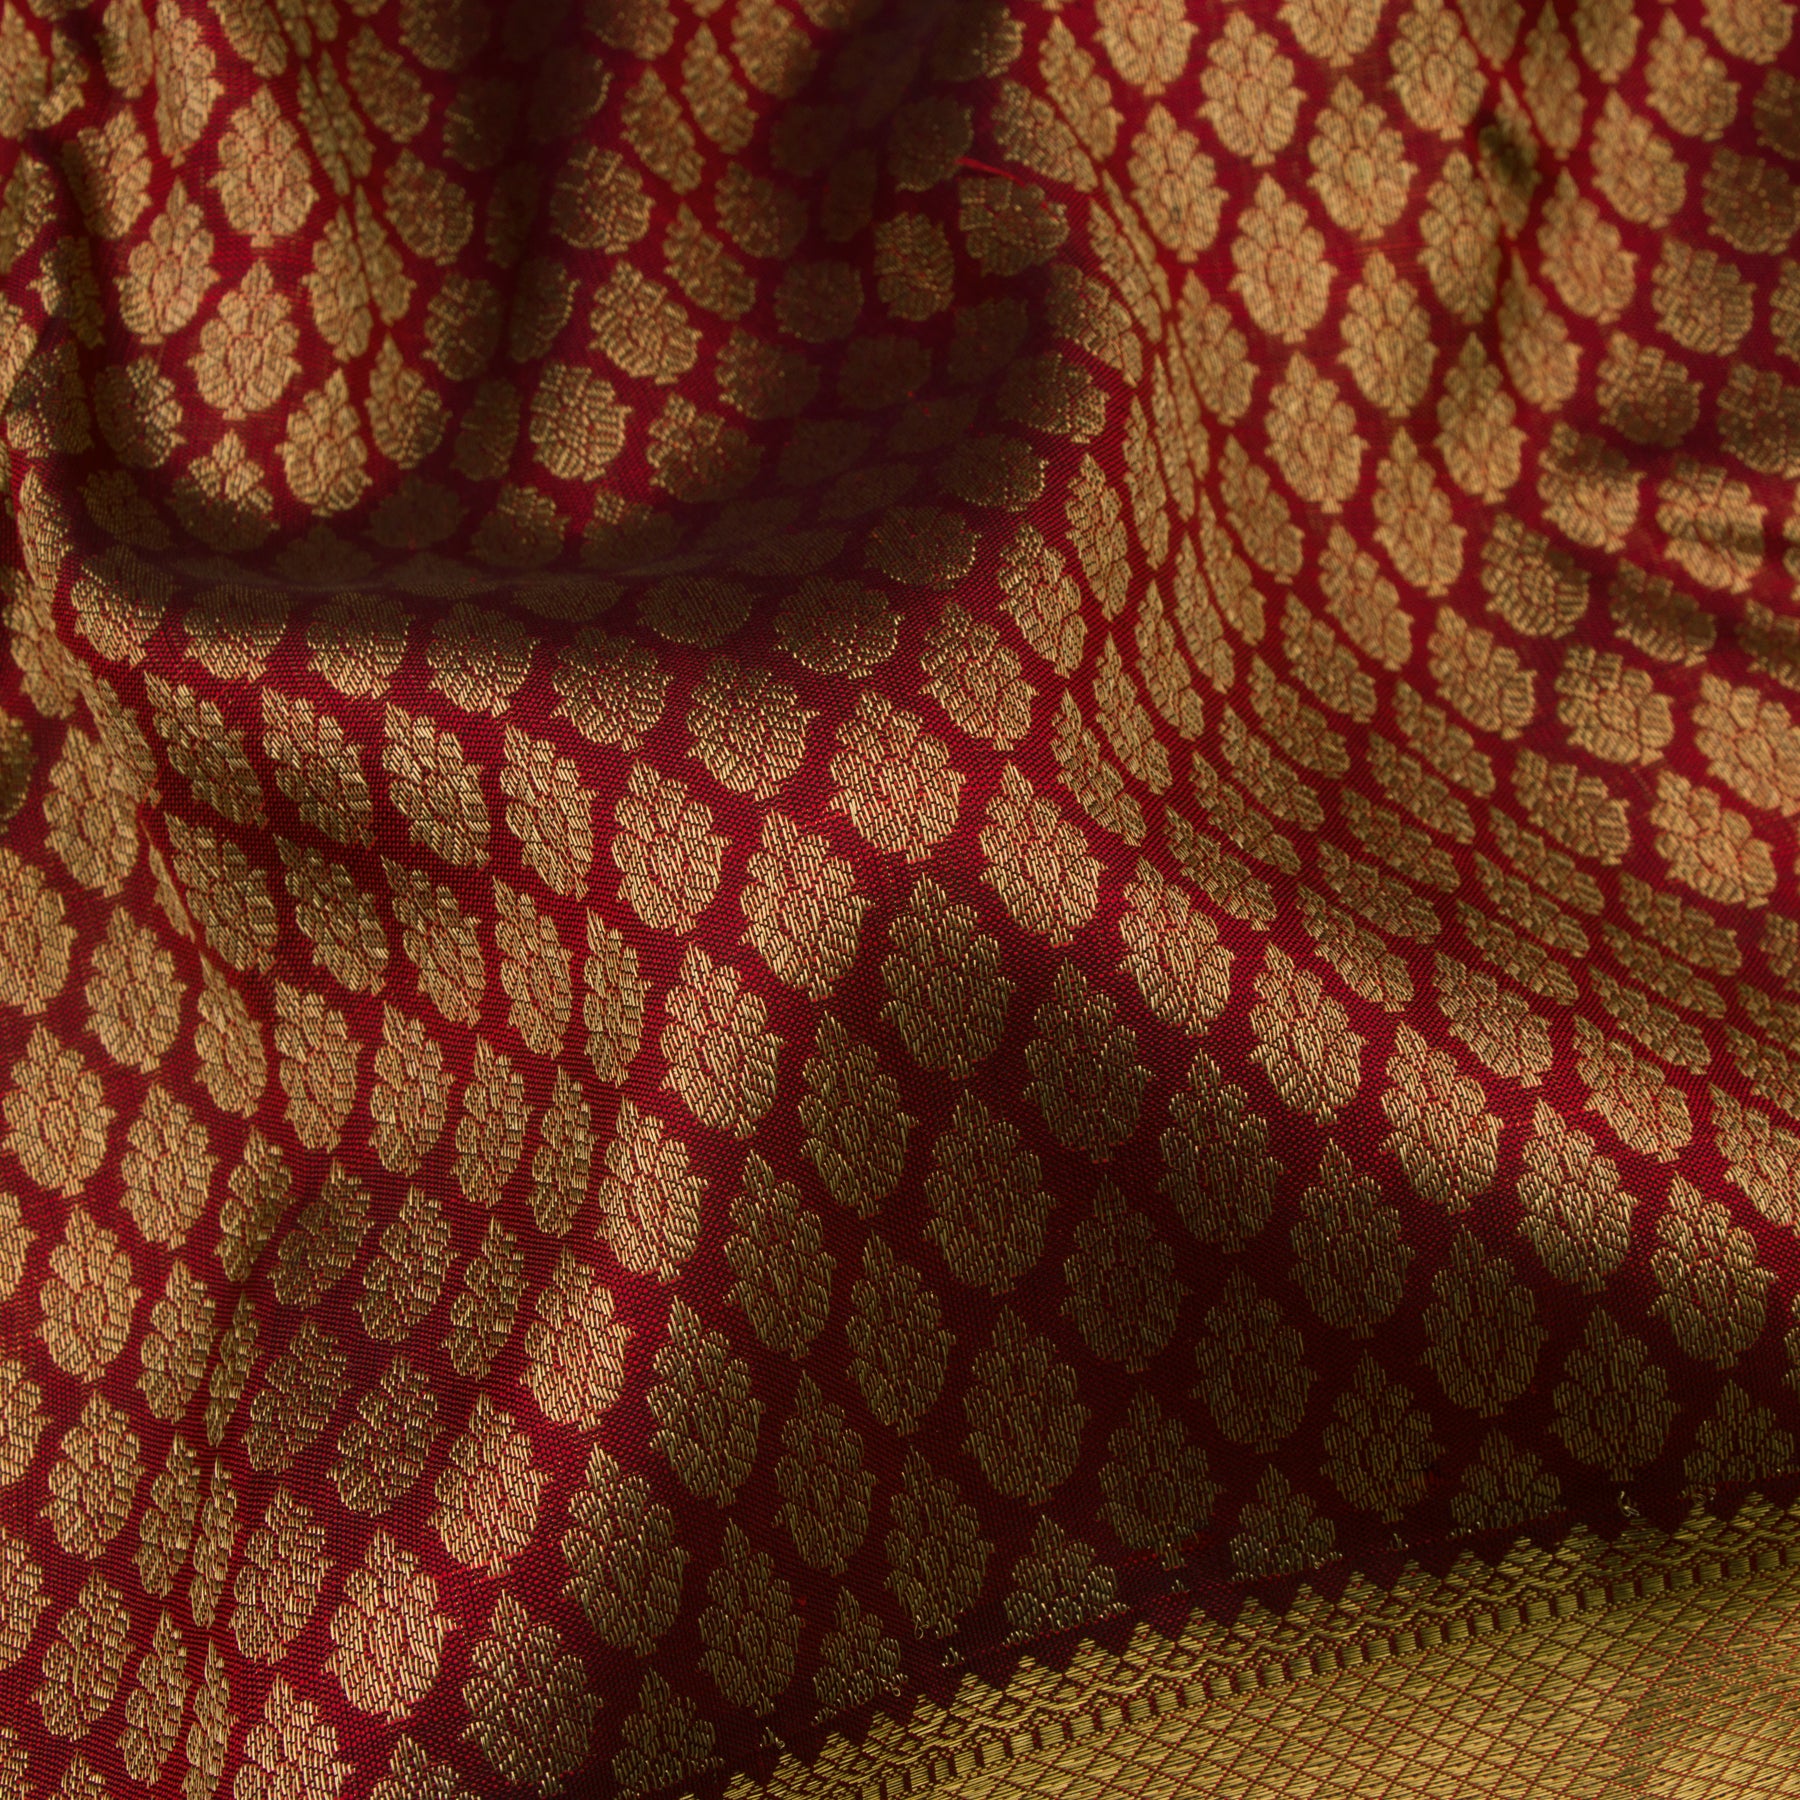 Kanakavalli Kanjivaram Silk Sari 21-100-HS001-01575 - Fabric View